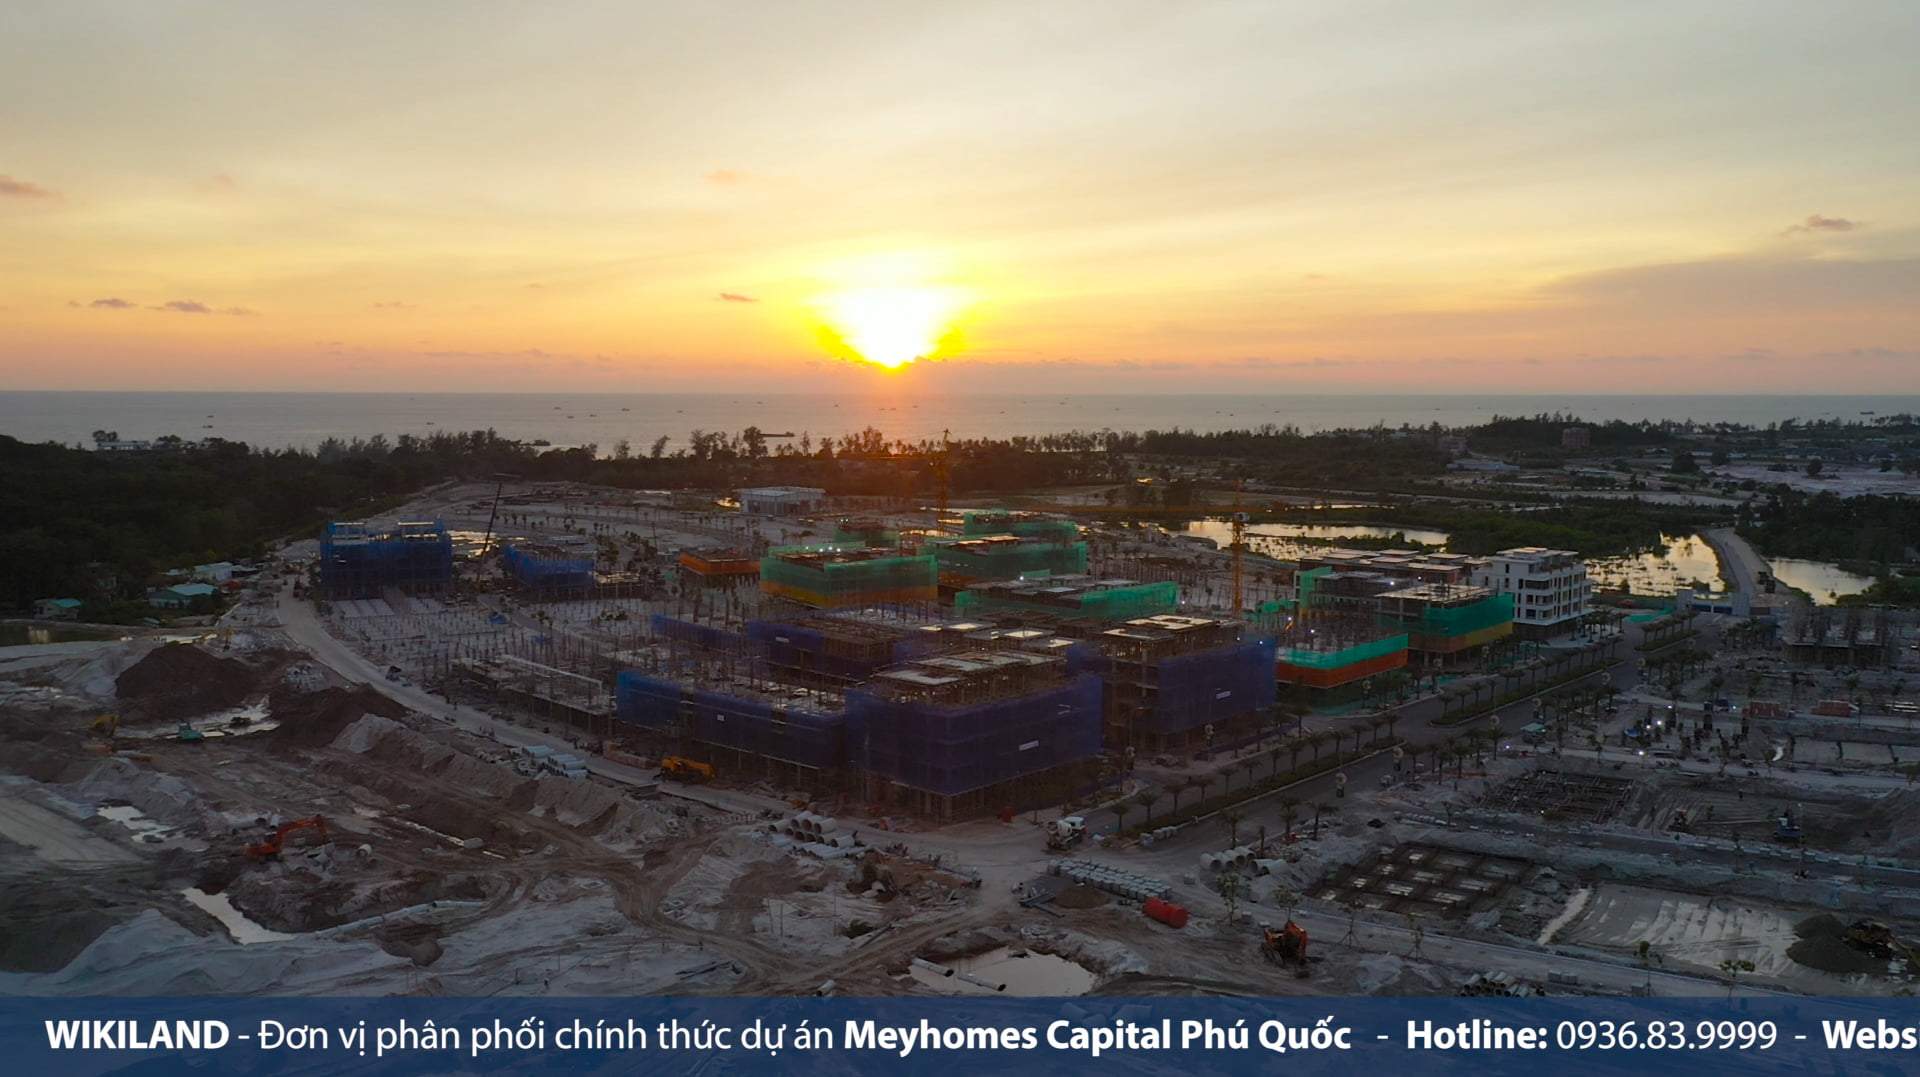 Cập nhật tiến độ dự án Meyhomes Capital Phú Quốc 28/01/2023